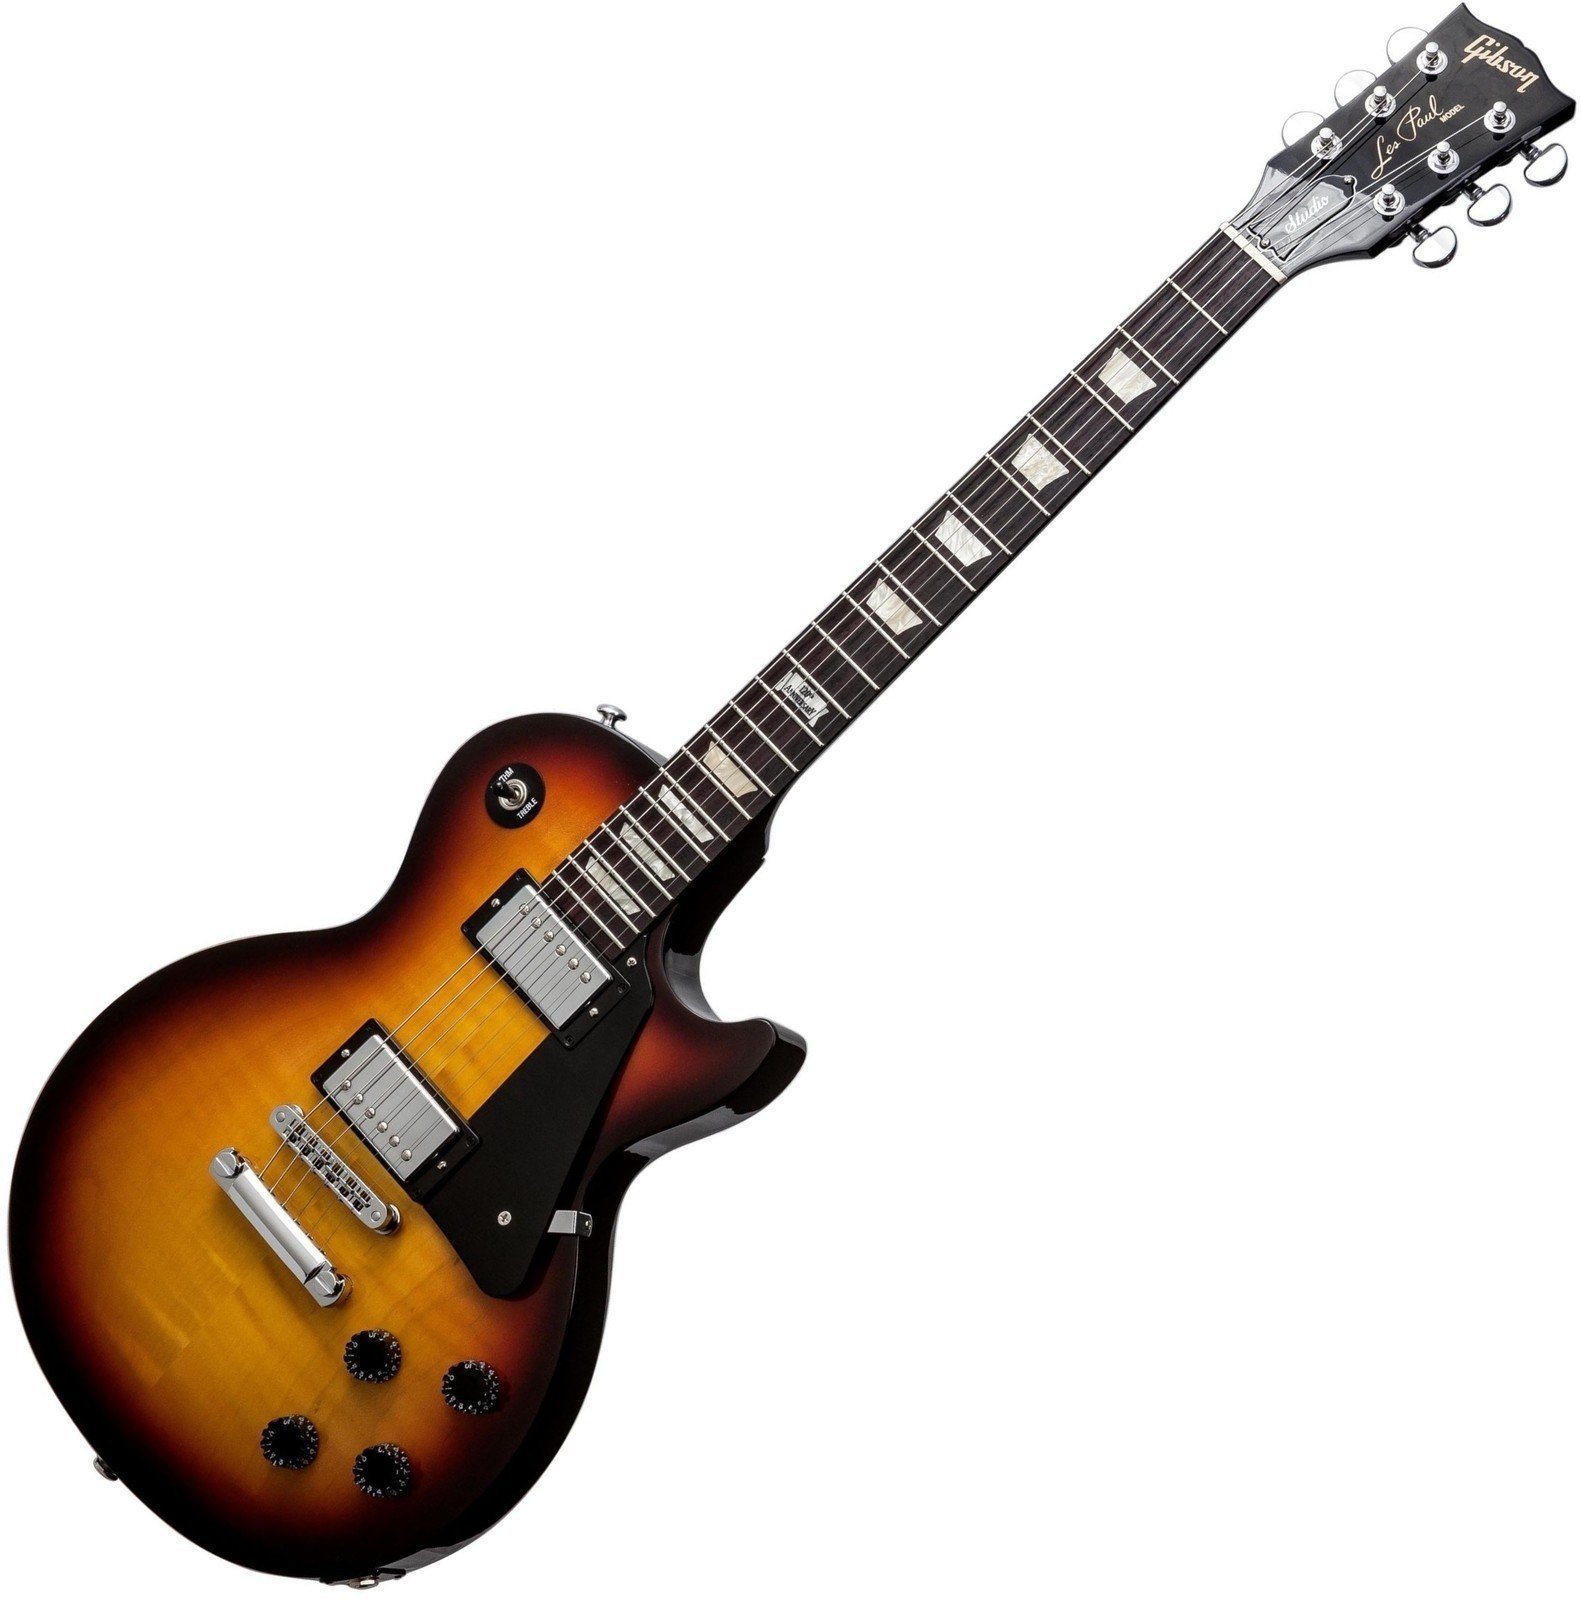 Ηλεκτρική Κιθάρα Gibson Les Paul Studio Pro 2014 Fireburst Candy